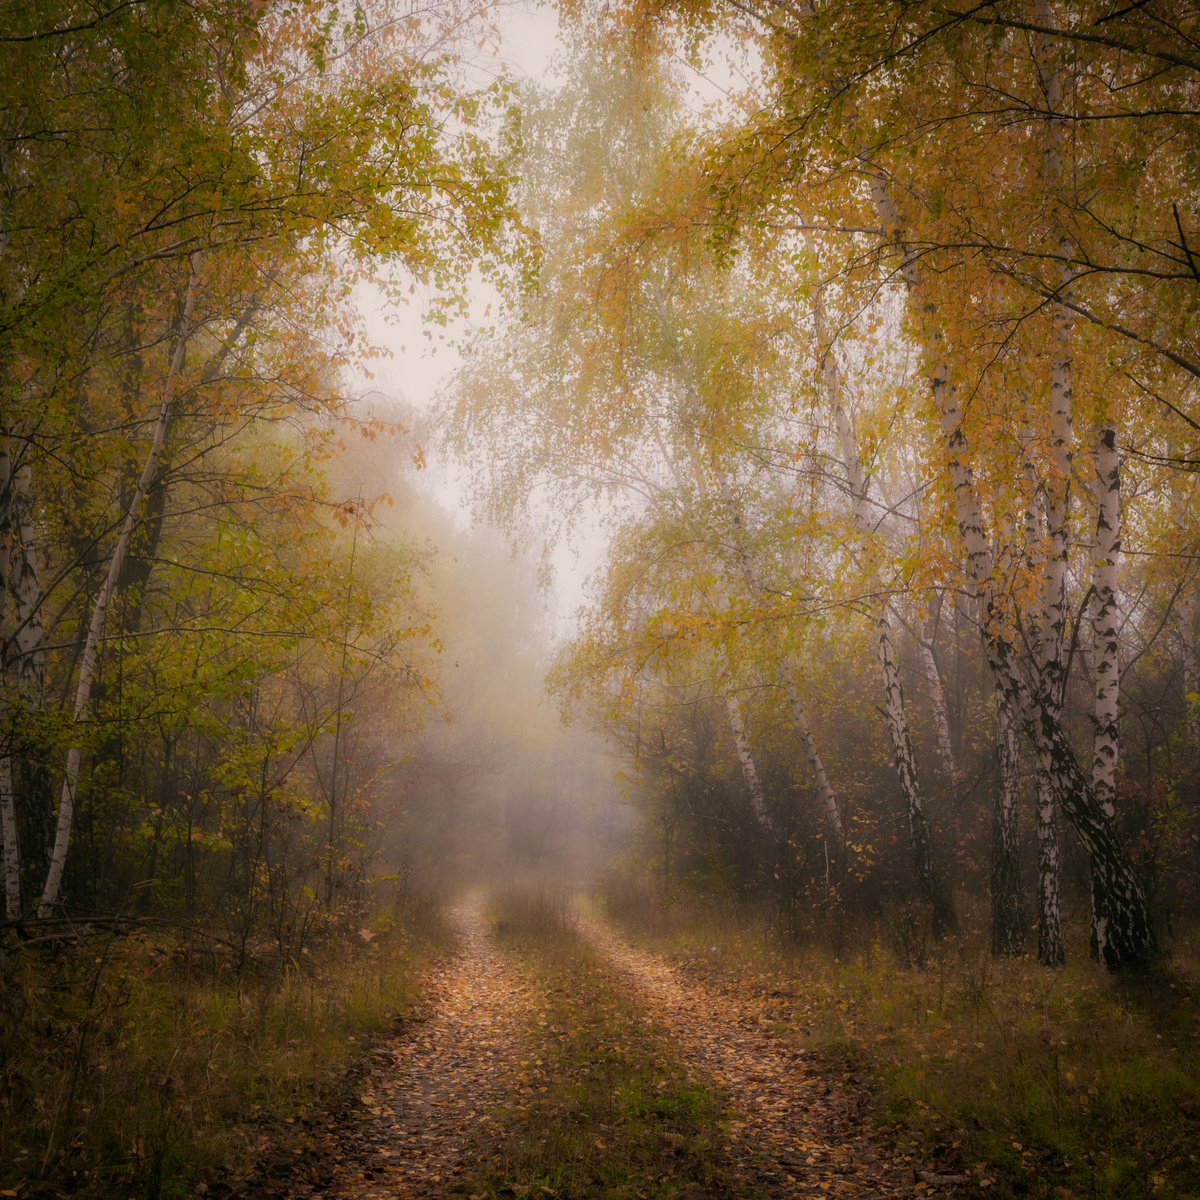 Foggy path by Vlad Durniev